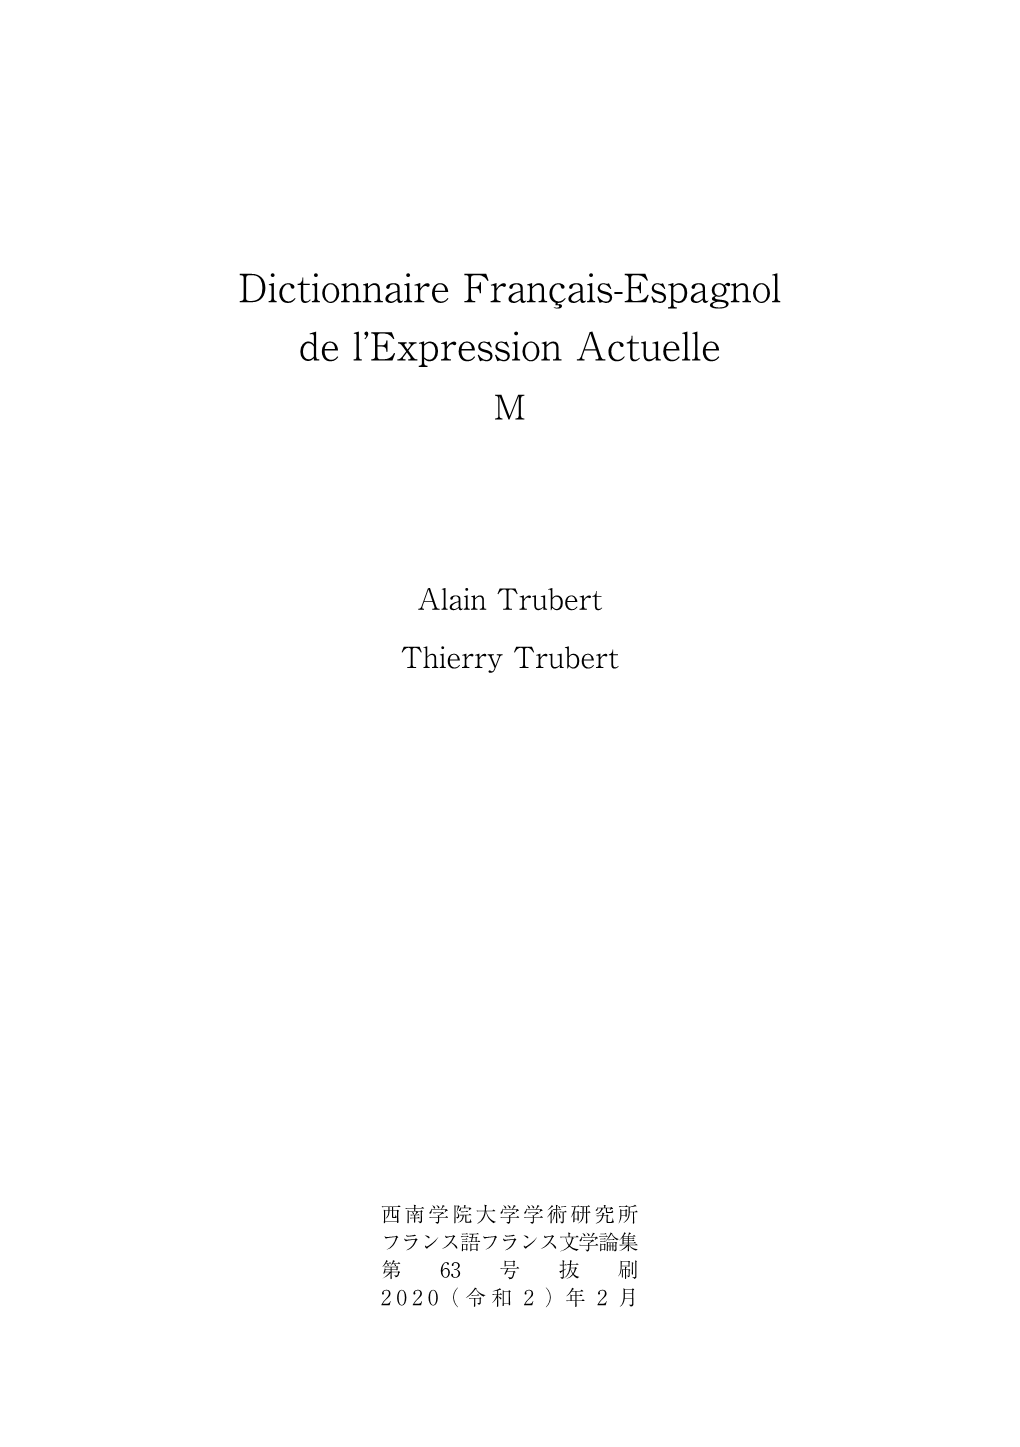 Dictionnaire Français-Espagnol De L'expression Actuelle